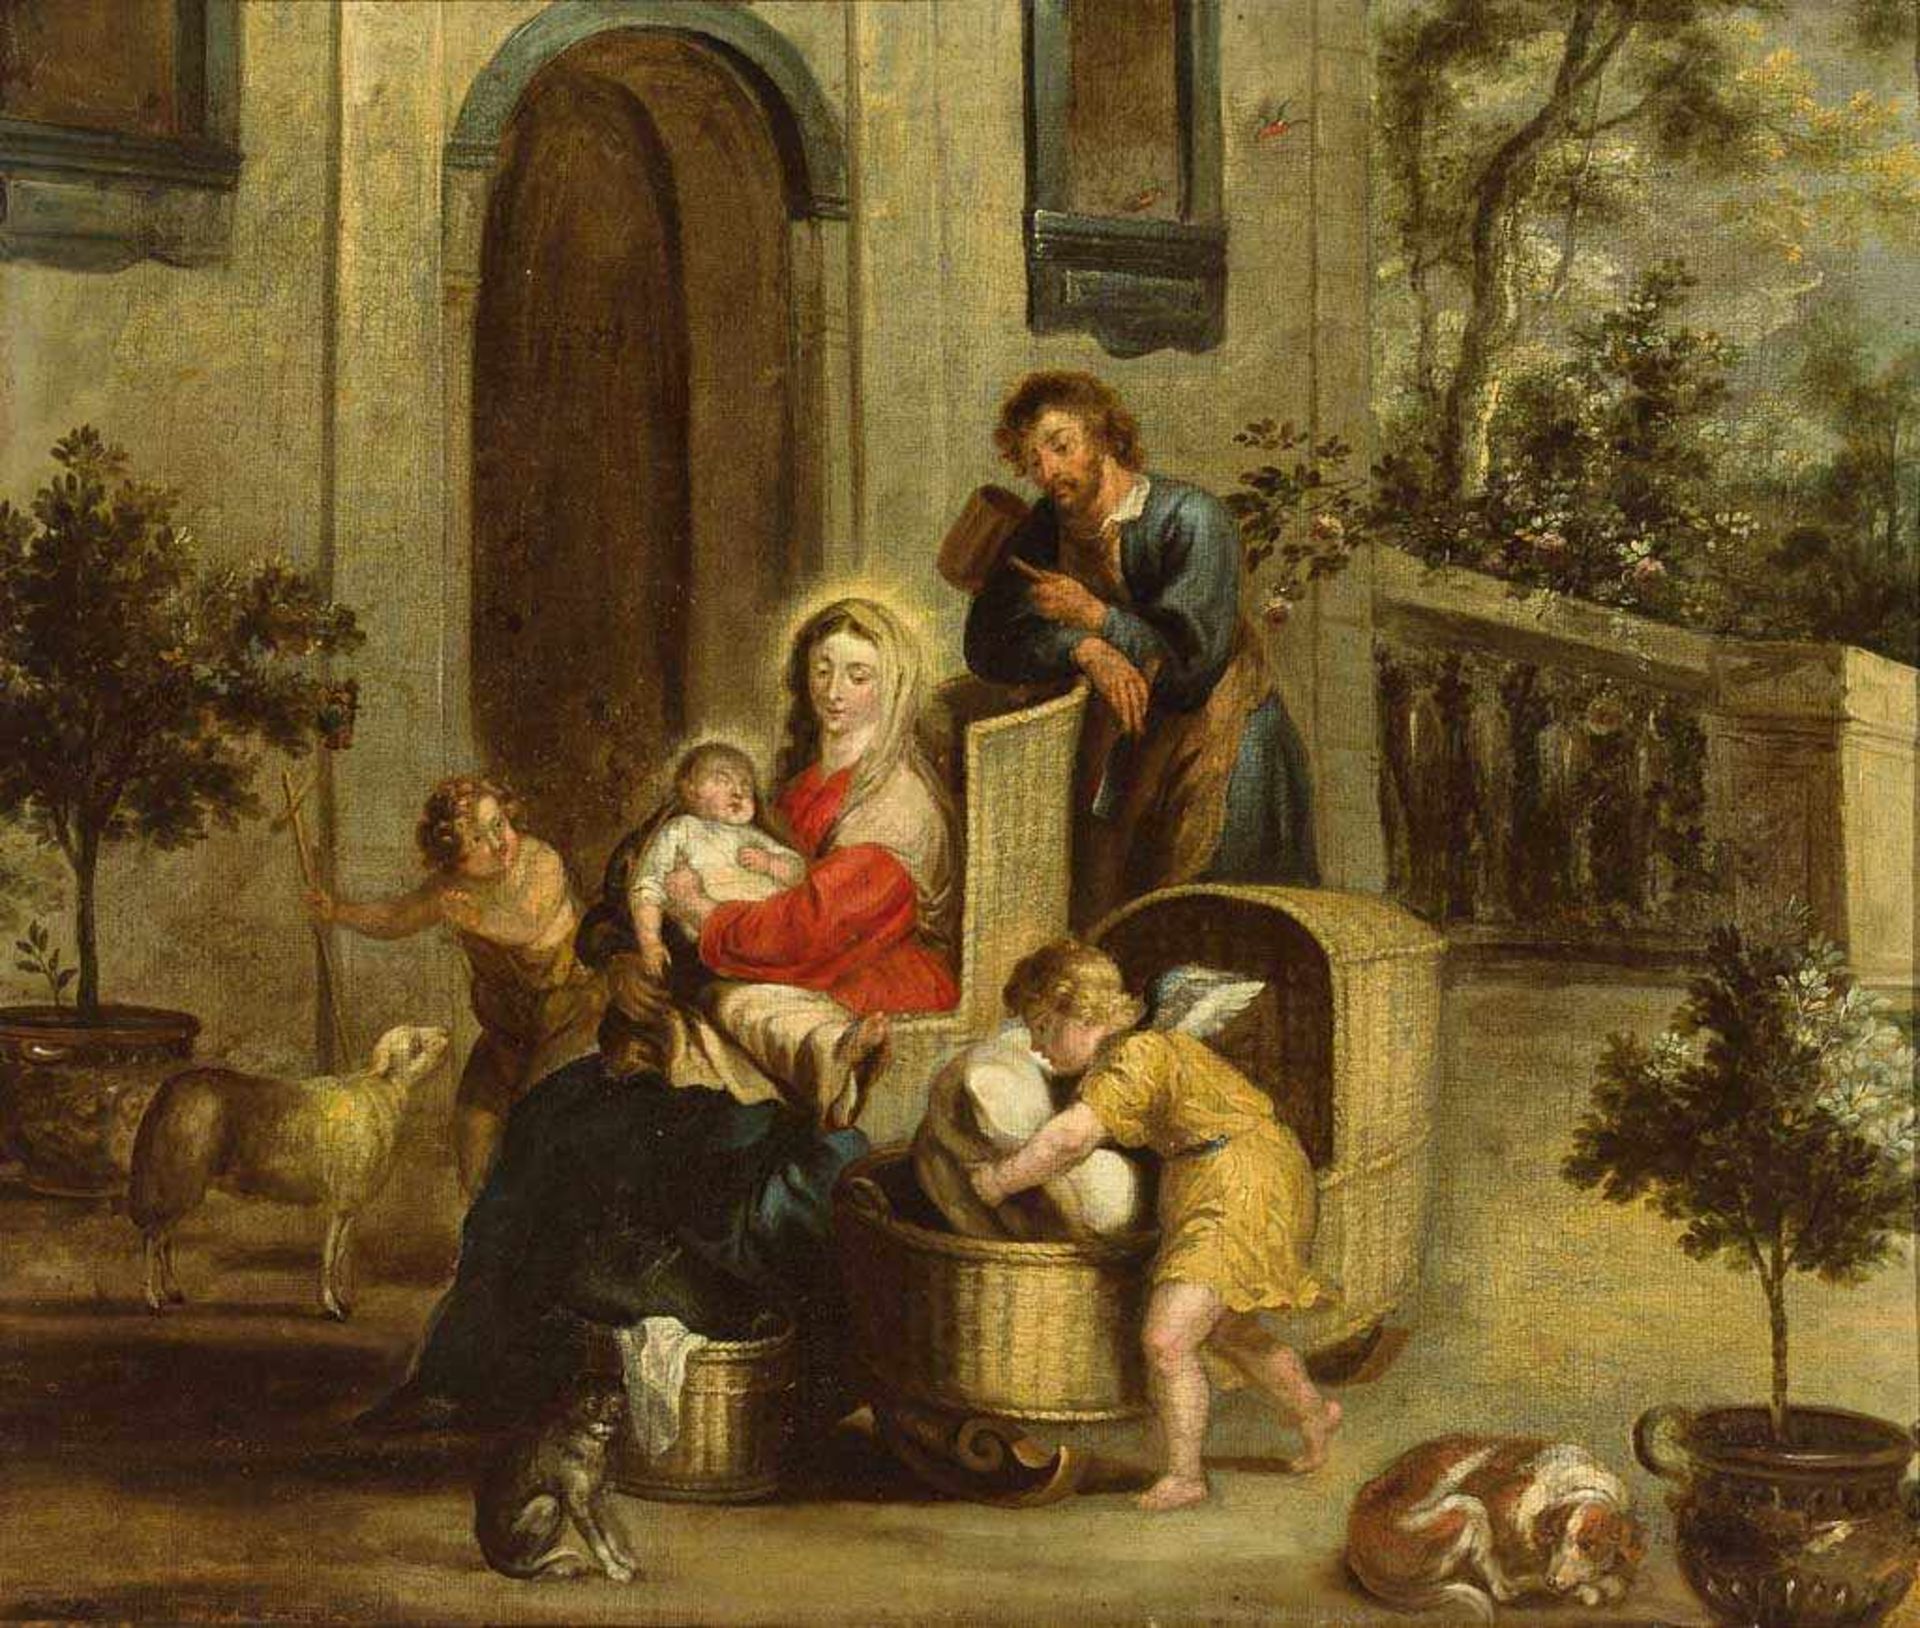 Niederländischer Maler des 17./18. Jh. Die Hl. Familie mit Johannesknabe und Engel. Öl/Lwd. 69,5 x